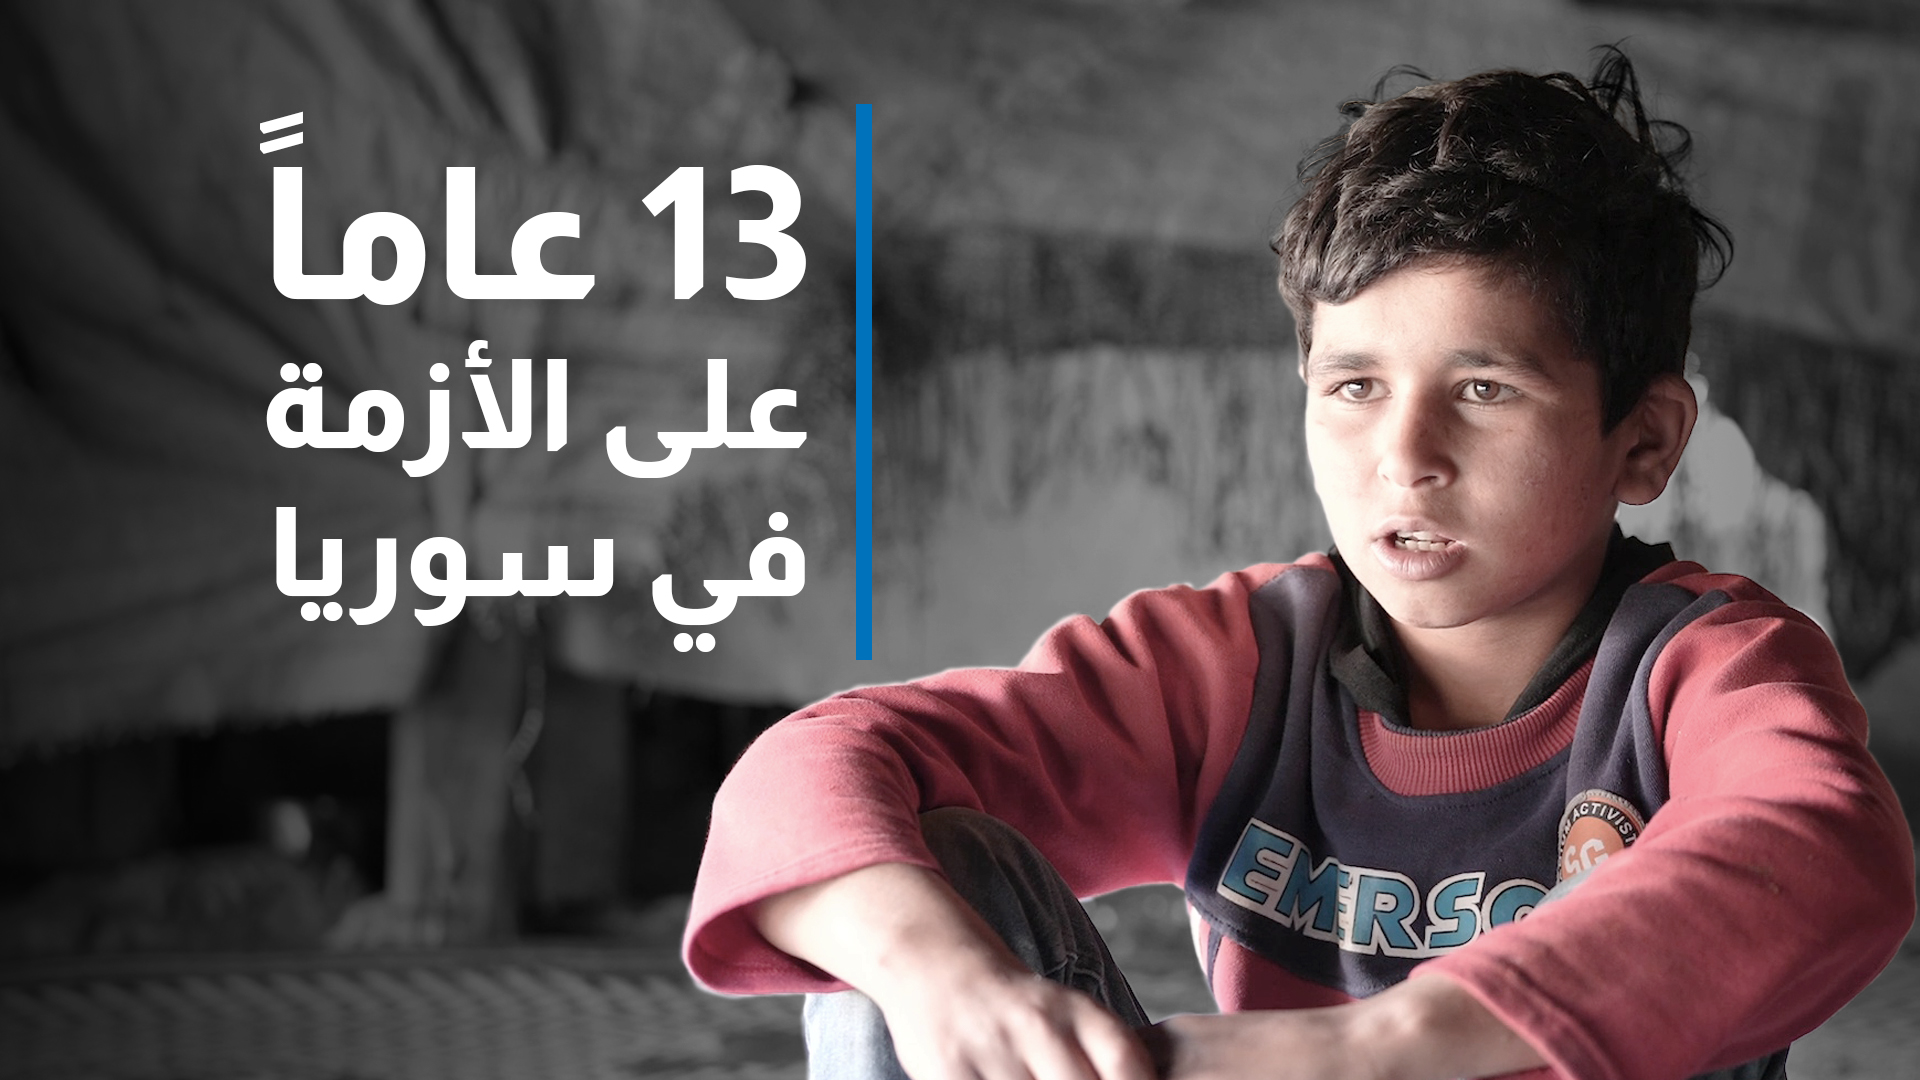 عزّام طفل سوري لاجئ له من العمر 13 عاماً، يحلم بمنزل لعائلته التي تعيش في خيمةٍ منذ بداية الأزمة في سوريا.